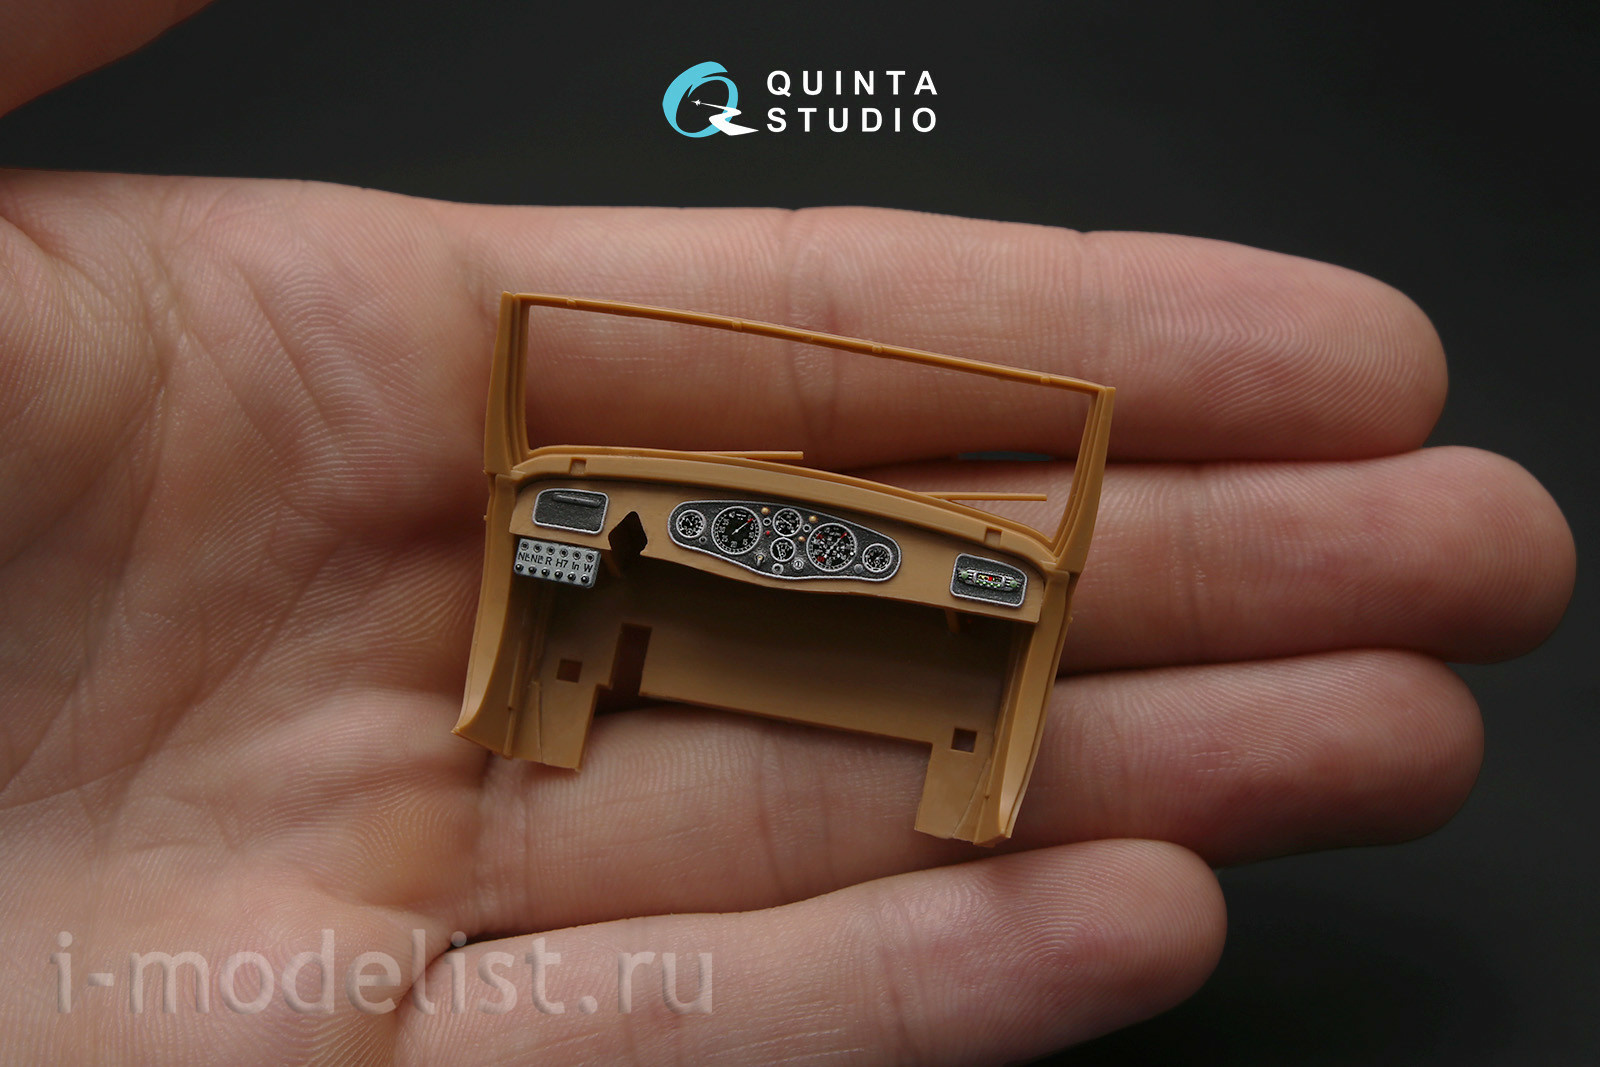 QD35021 Quinta Studio 1/35 3D Декаль интерьера кабины для Mercedes-Benz G4 W31 (для любых моделей)